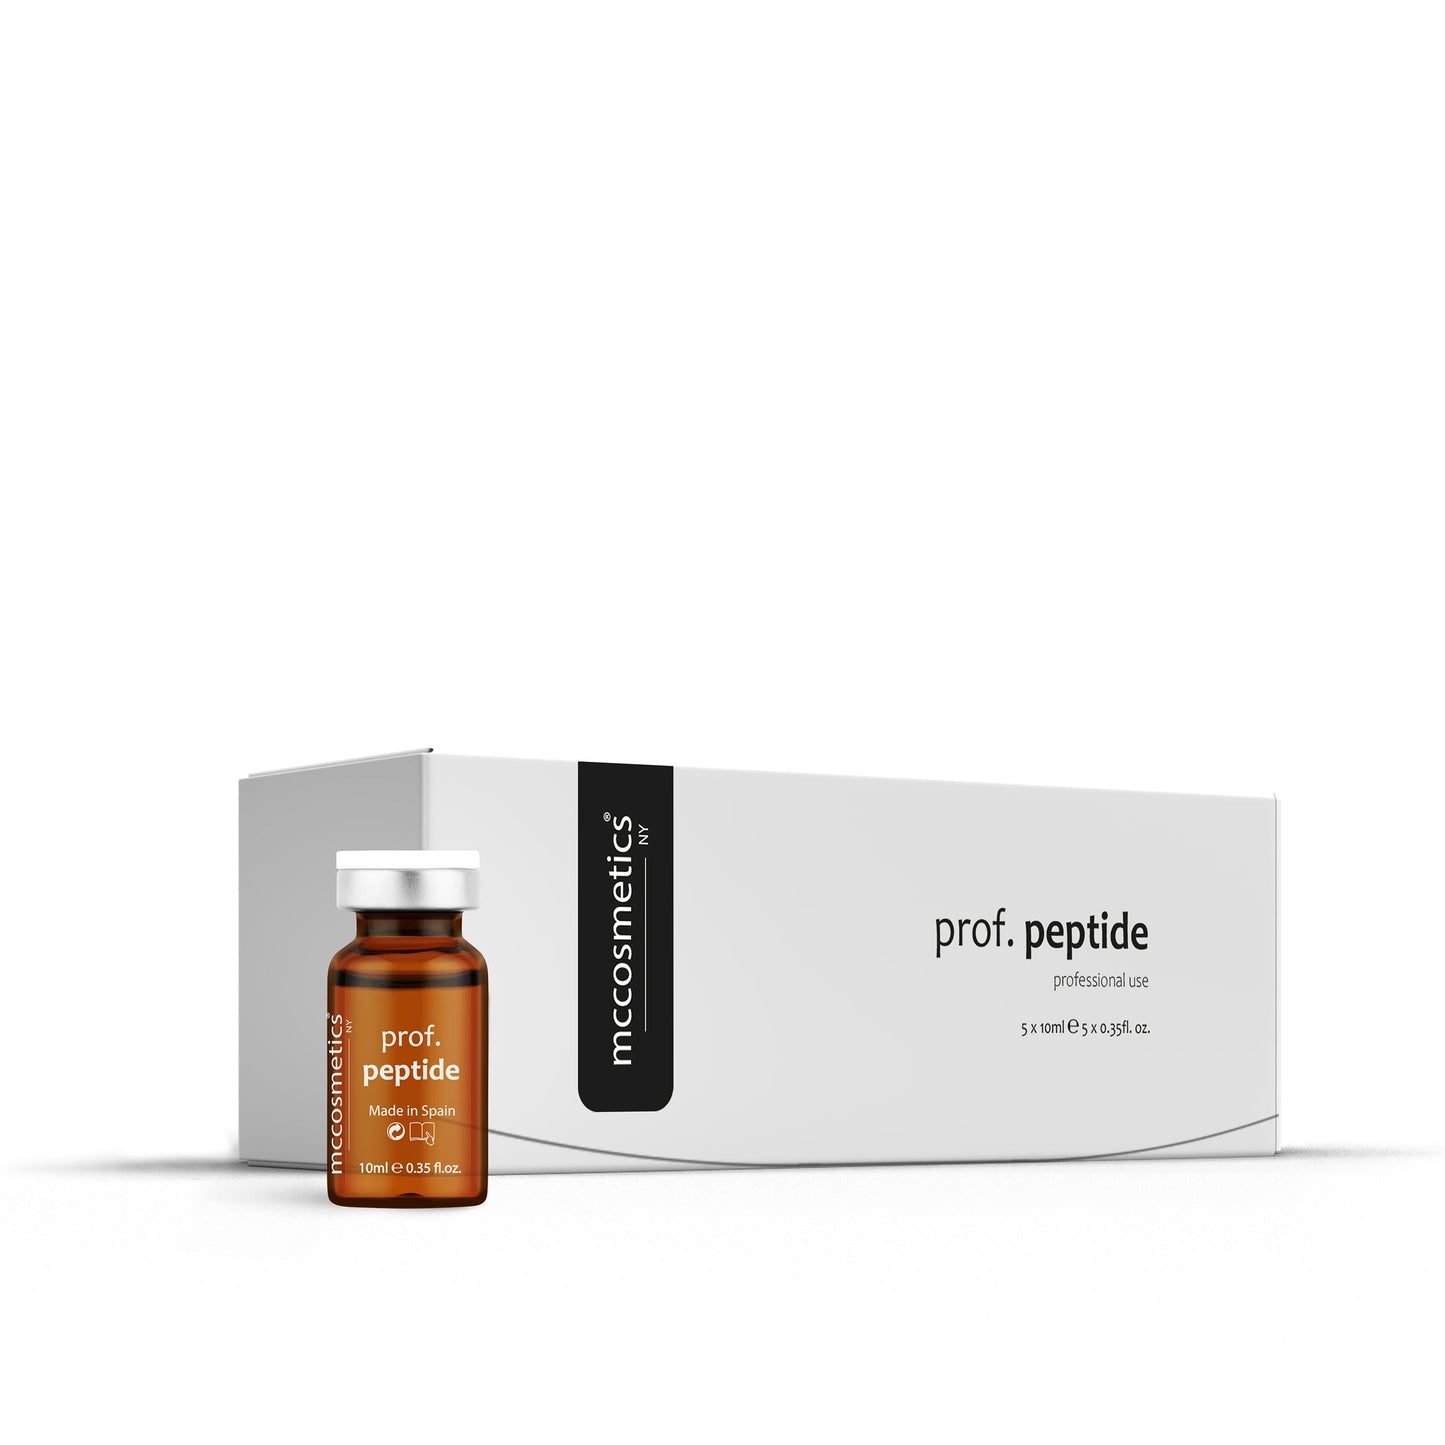 prof. peptide - mccosmetics.ny